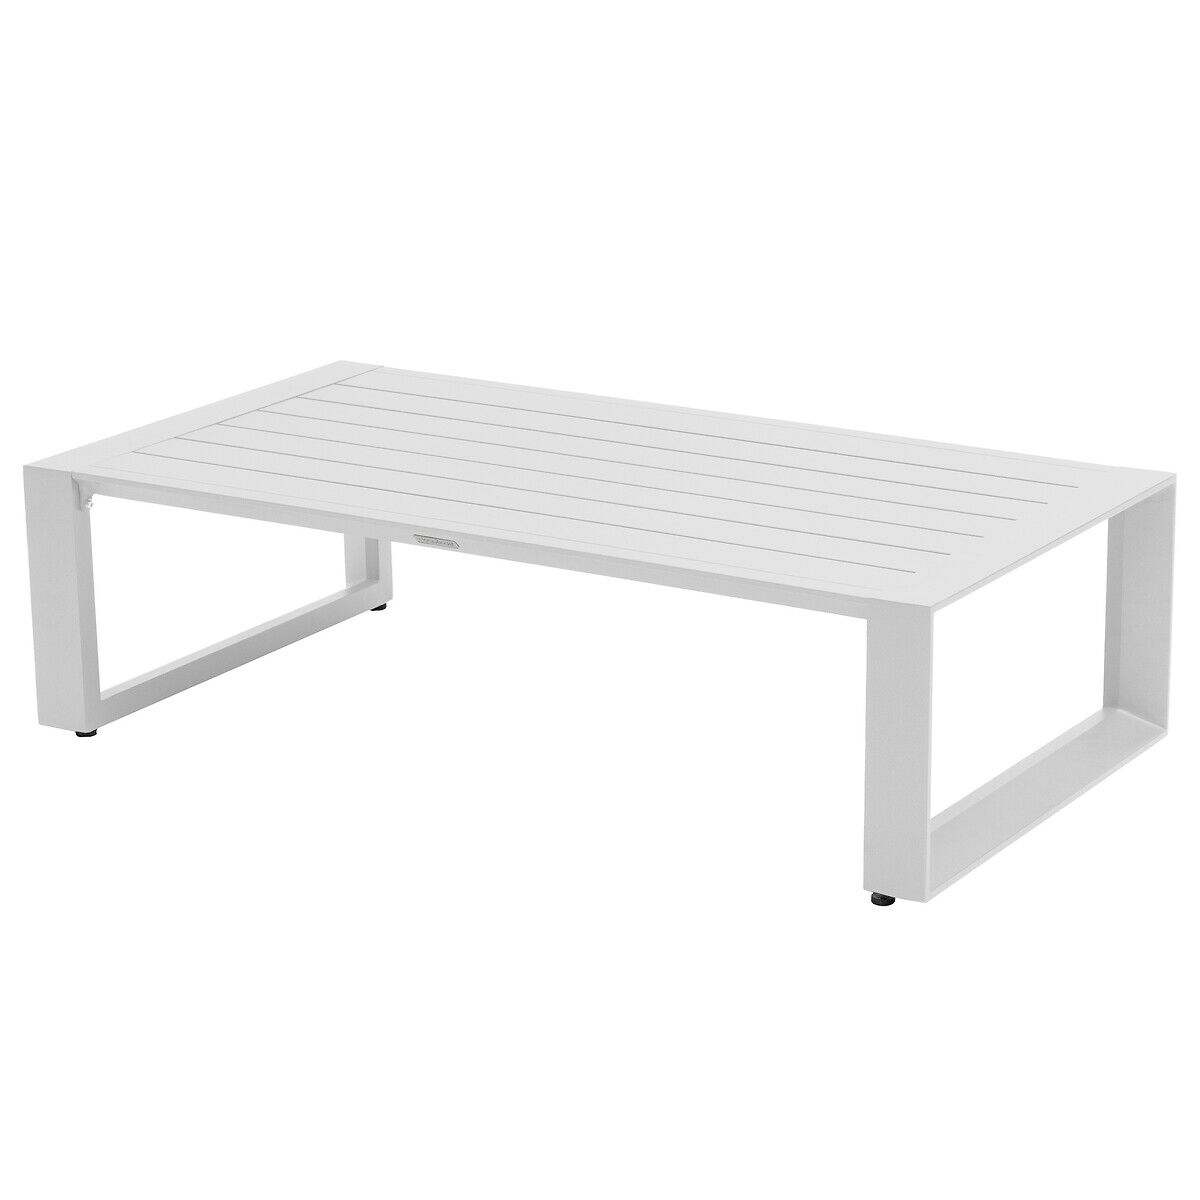 Hespéride Table basse de jardin rectangulaire Allure Gris minéral   Blanc 130 x 70 76 cm - Aluminium traité époxy - Publicité